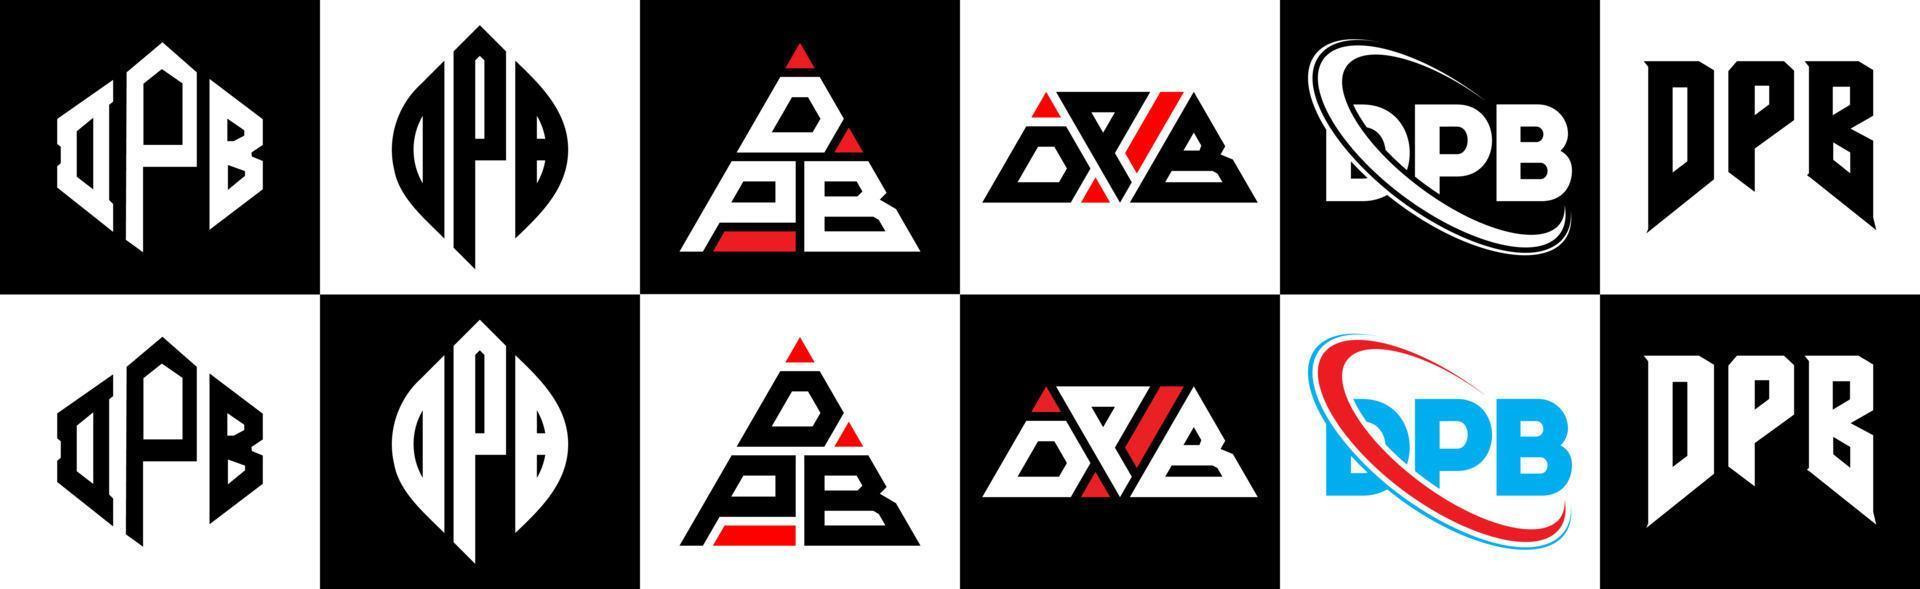 création de logo de lettre dpb en six styles. dpb polygone, cercle, triangle, hexagone, style plat et simple avec logo de lettre de variation de couleur noir et blanc dans un plan de travail. logo minimaliste et classique dpb vecteur